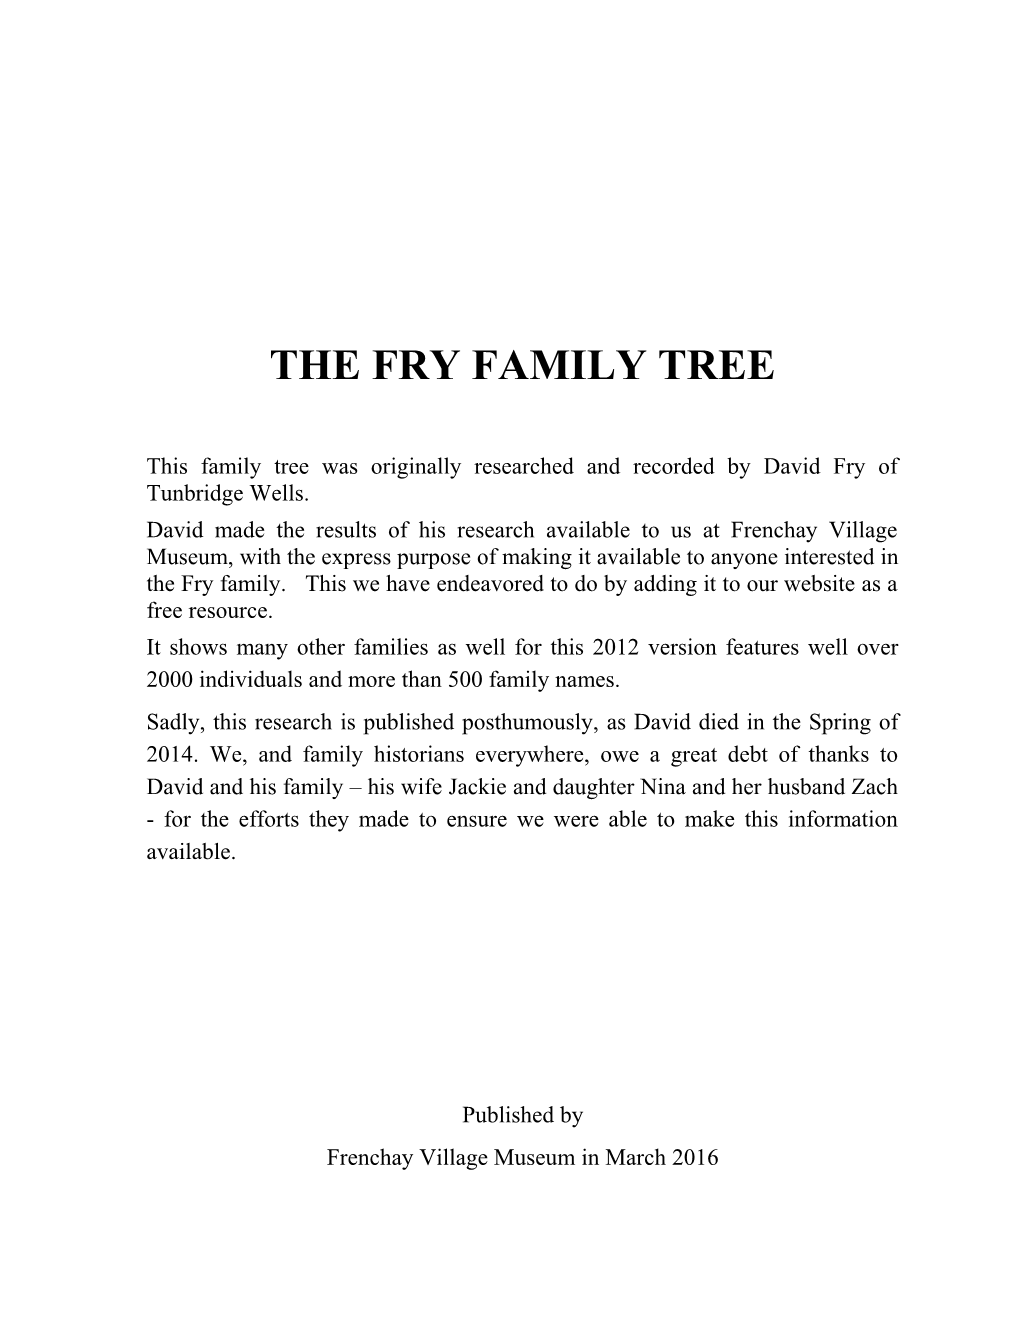 The Fry Family Tree